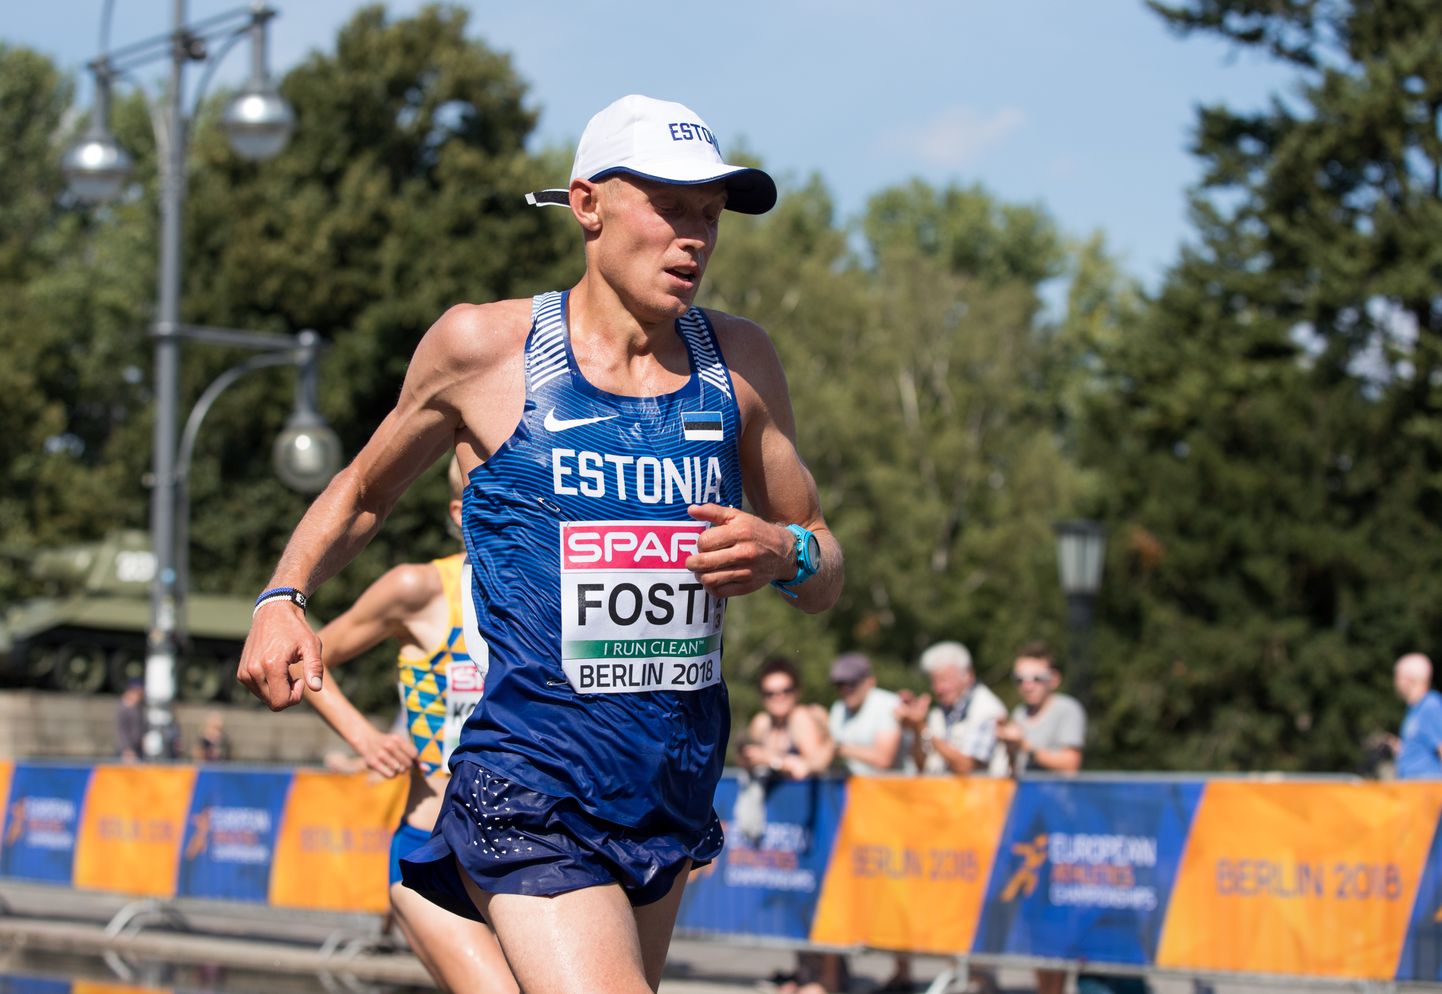 Roman Fosti mullu Berliinis peetud kergejõustiku EMil meeste maratonil.